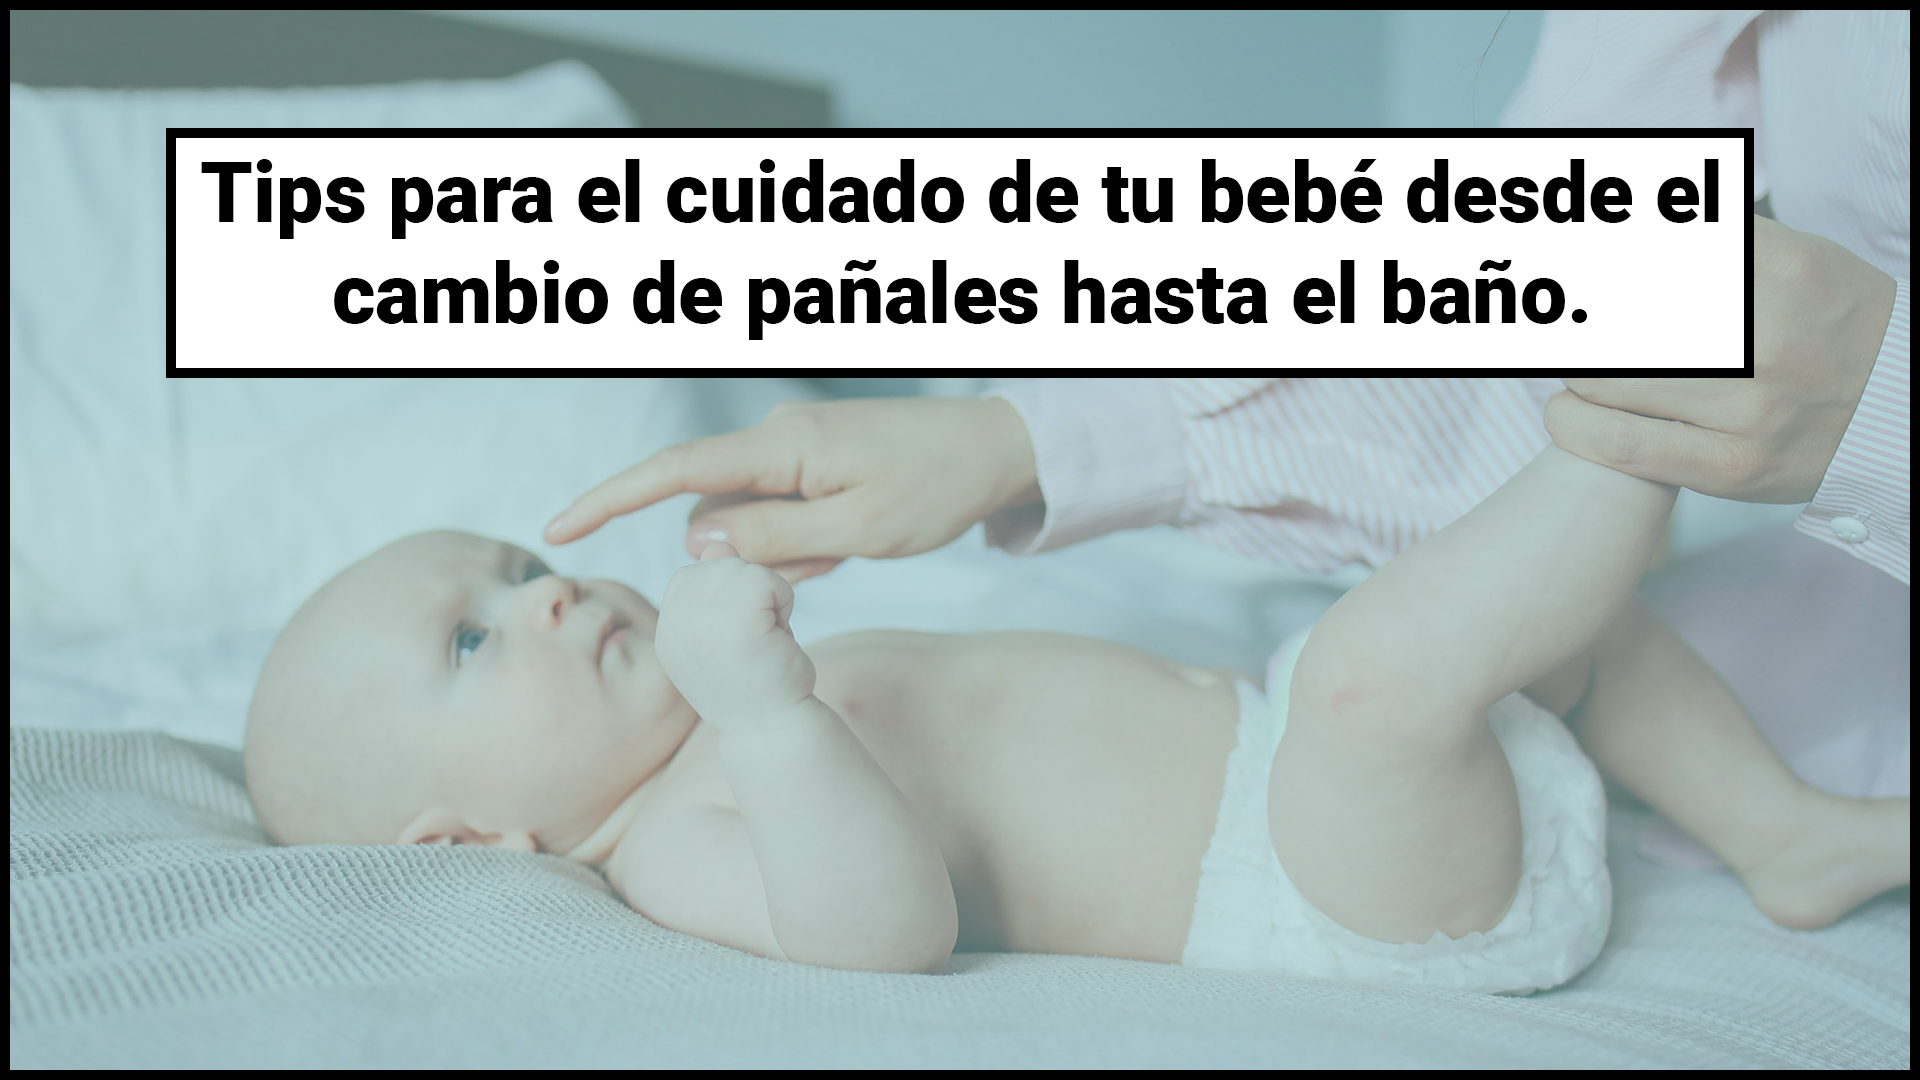 Tips para el cuidado de tu bebé desde el cambio de pañales hasta el baño.